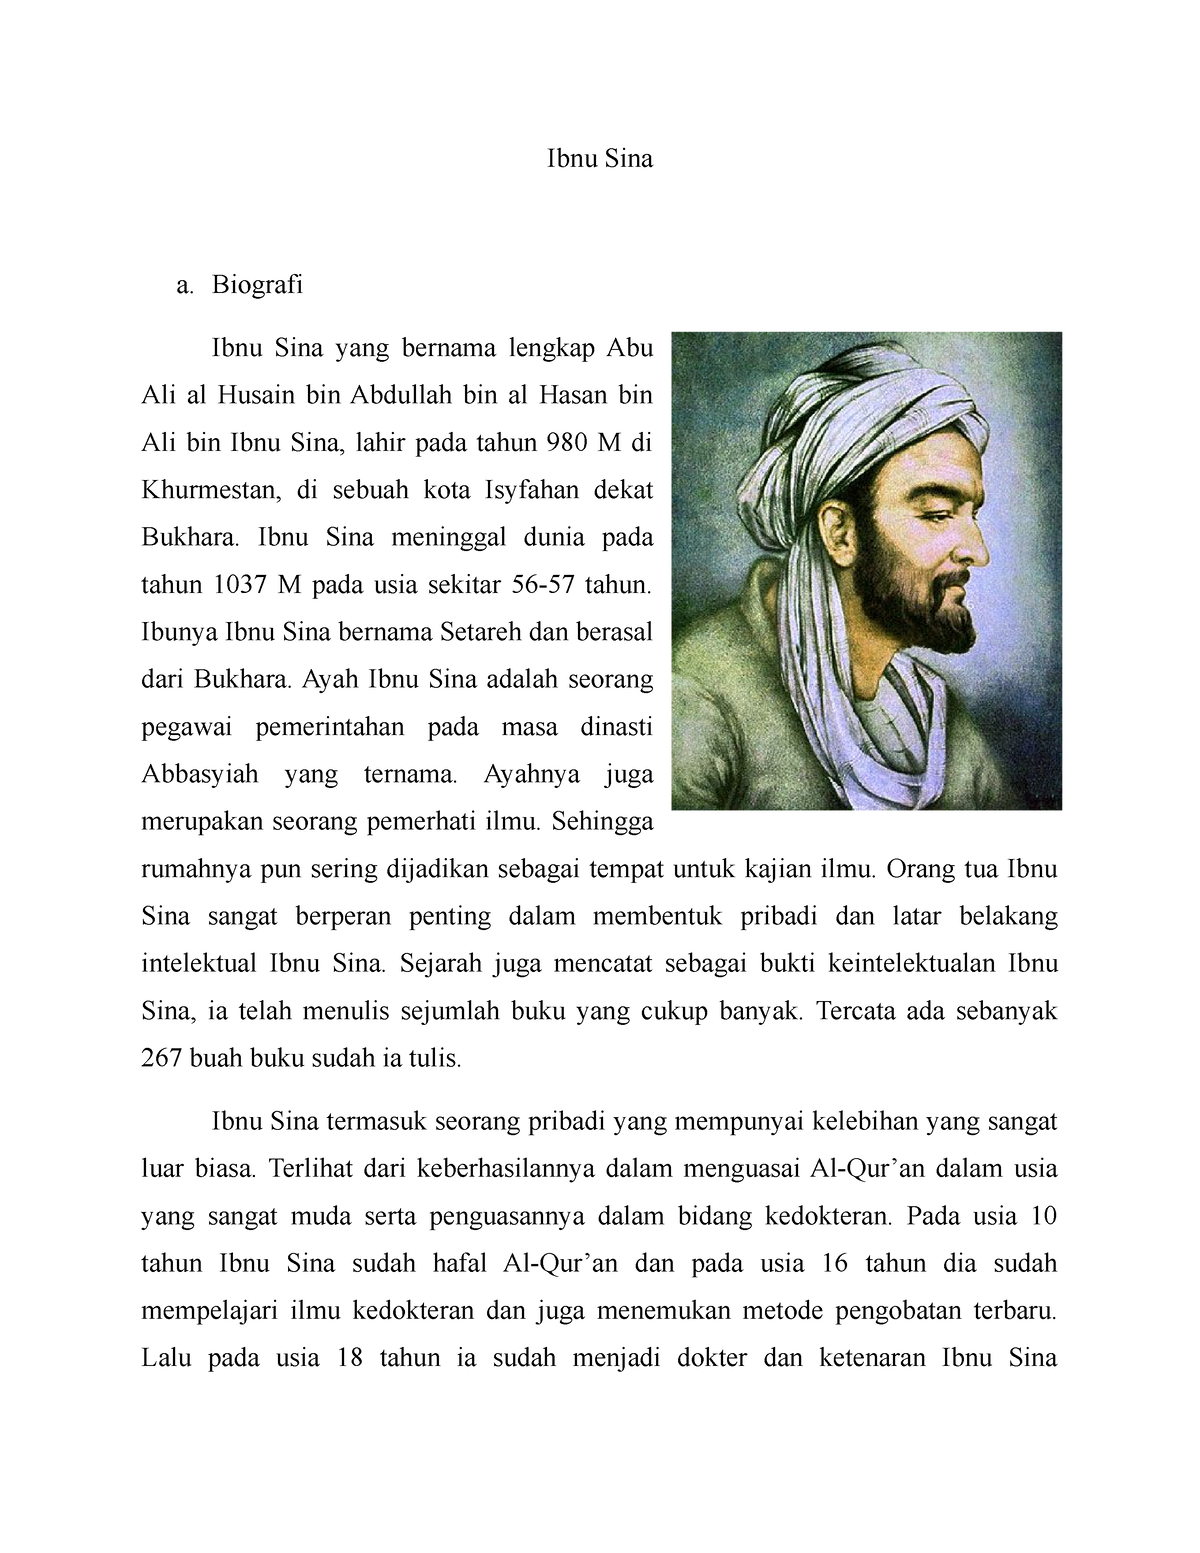 Profil Ibnu Sina Part 1 - Ibnu Sina termasuk seorang pribadi yang